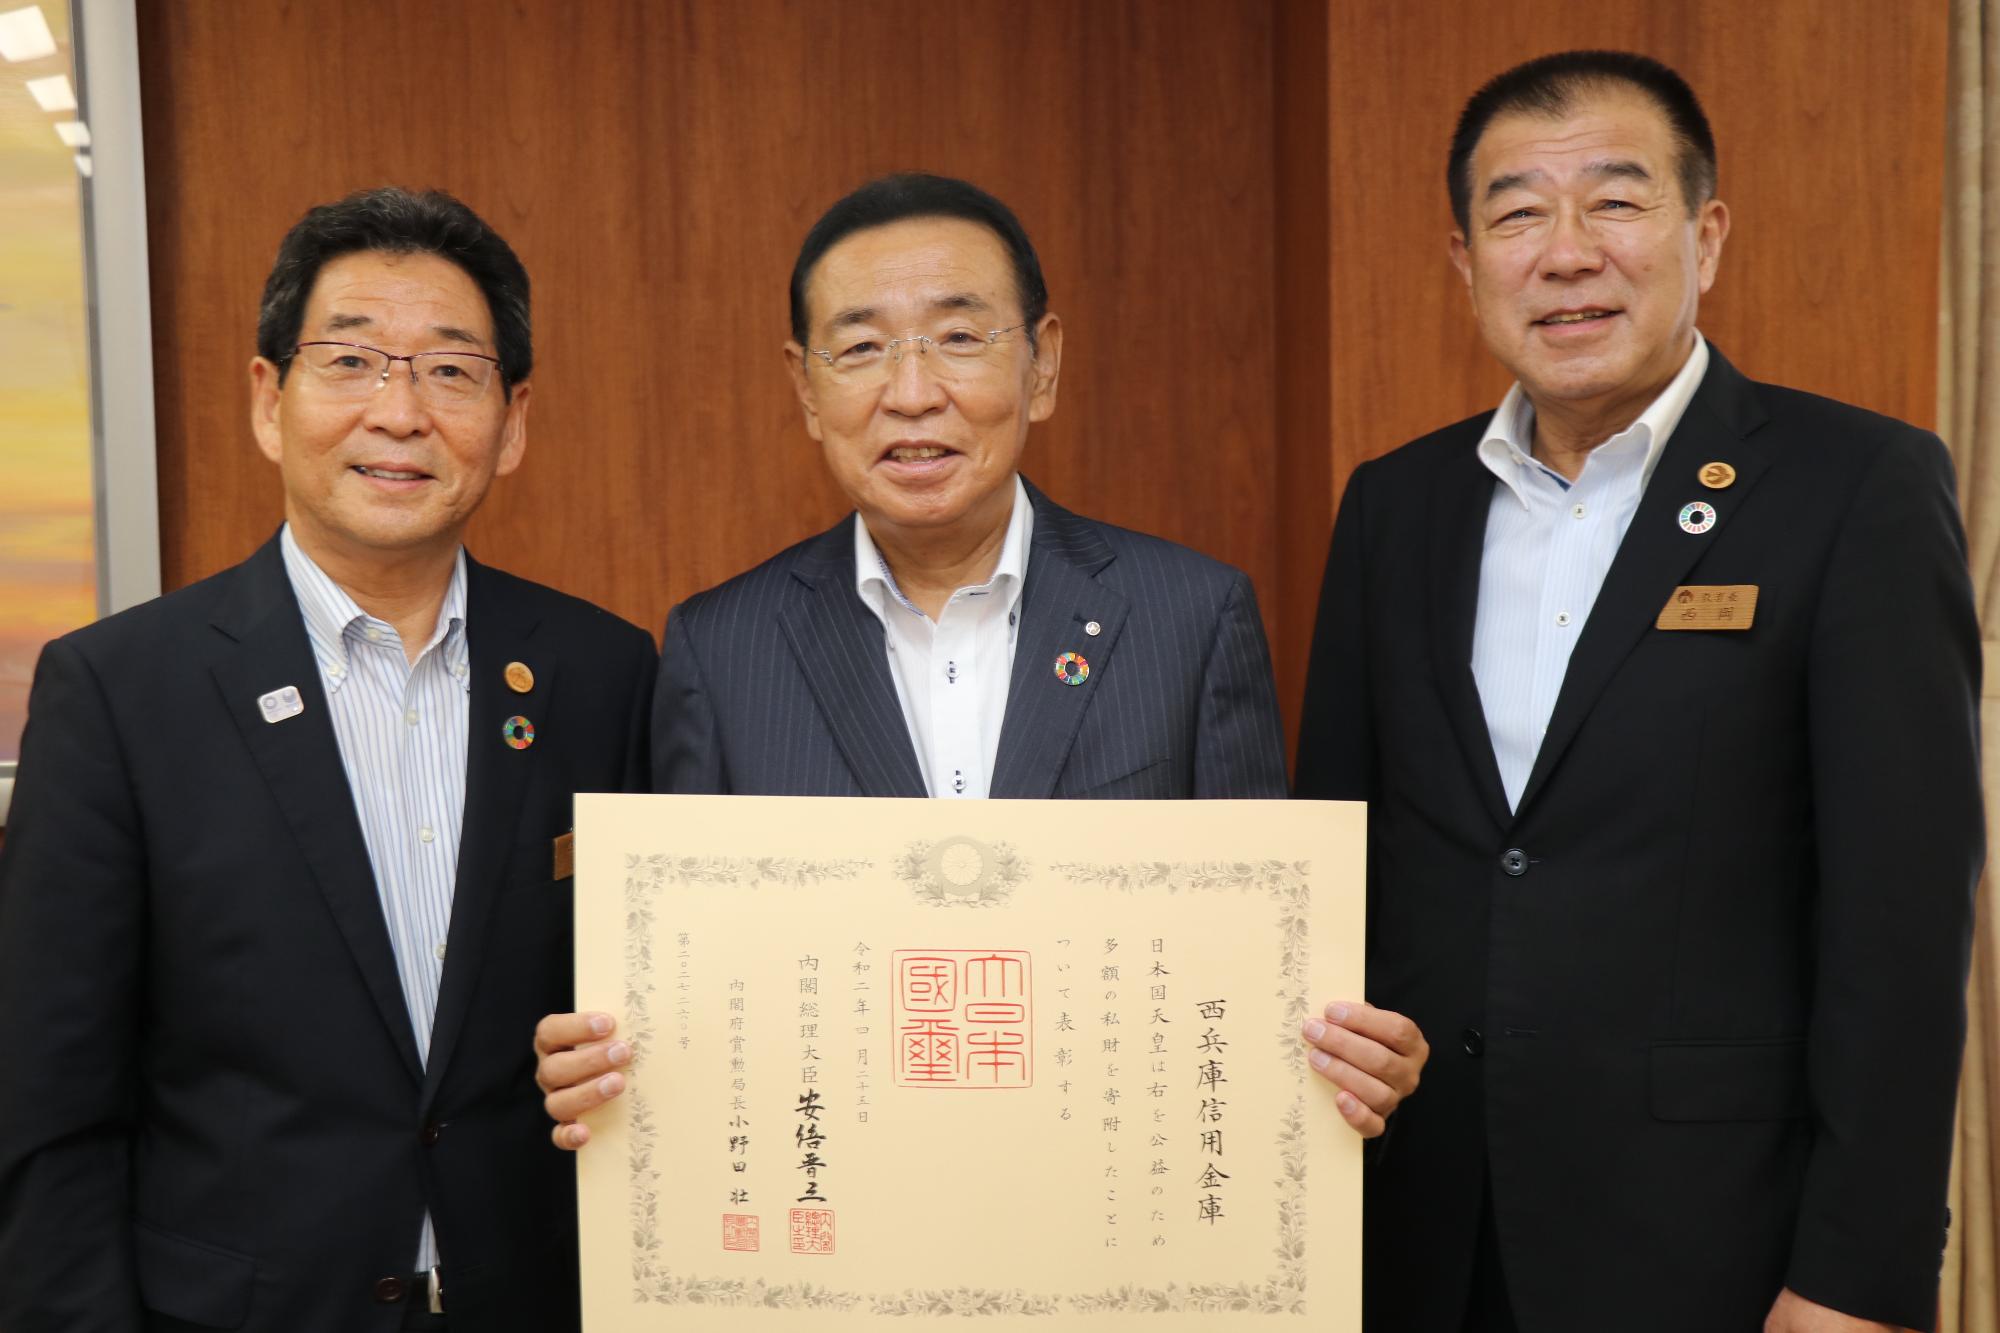 左から福元市長、褒状を持つ西兵庫信用金庫志水理事長、西岡教育長の写真